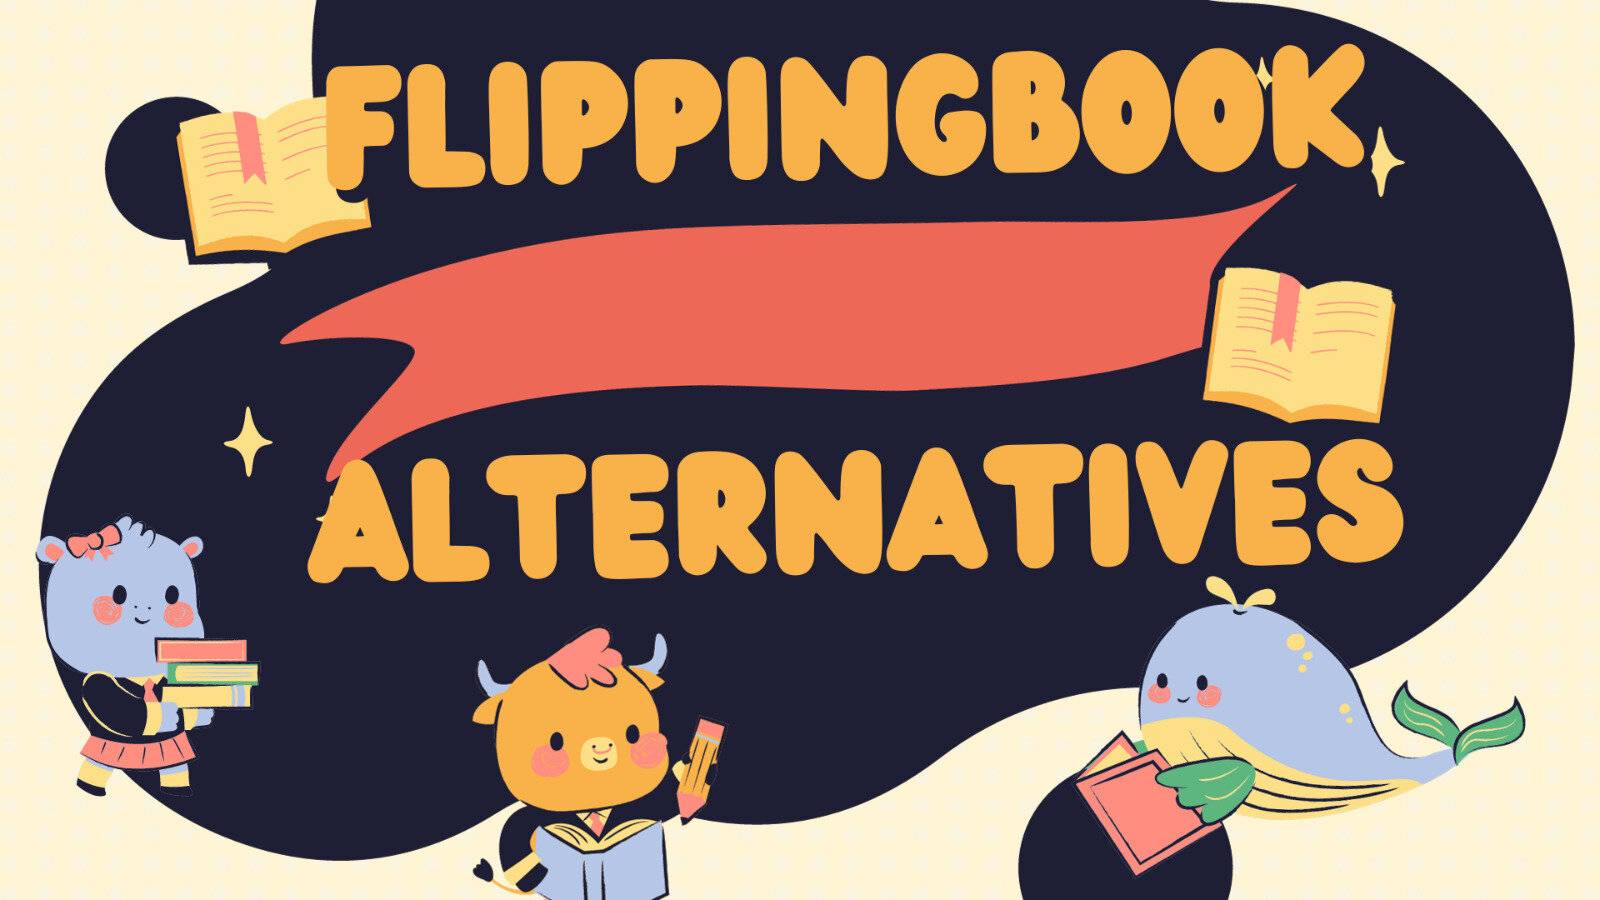 16 FlippingBook Alternatives